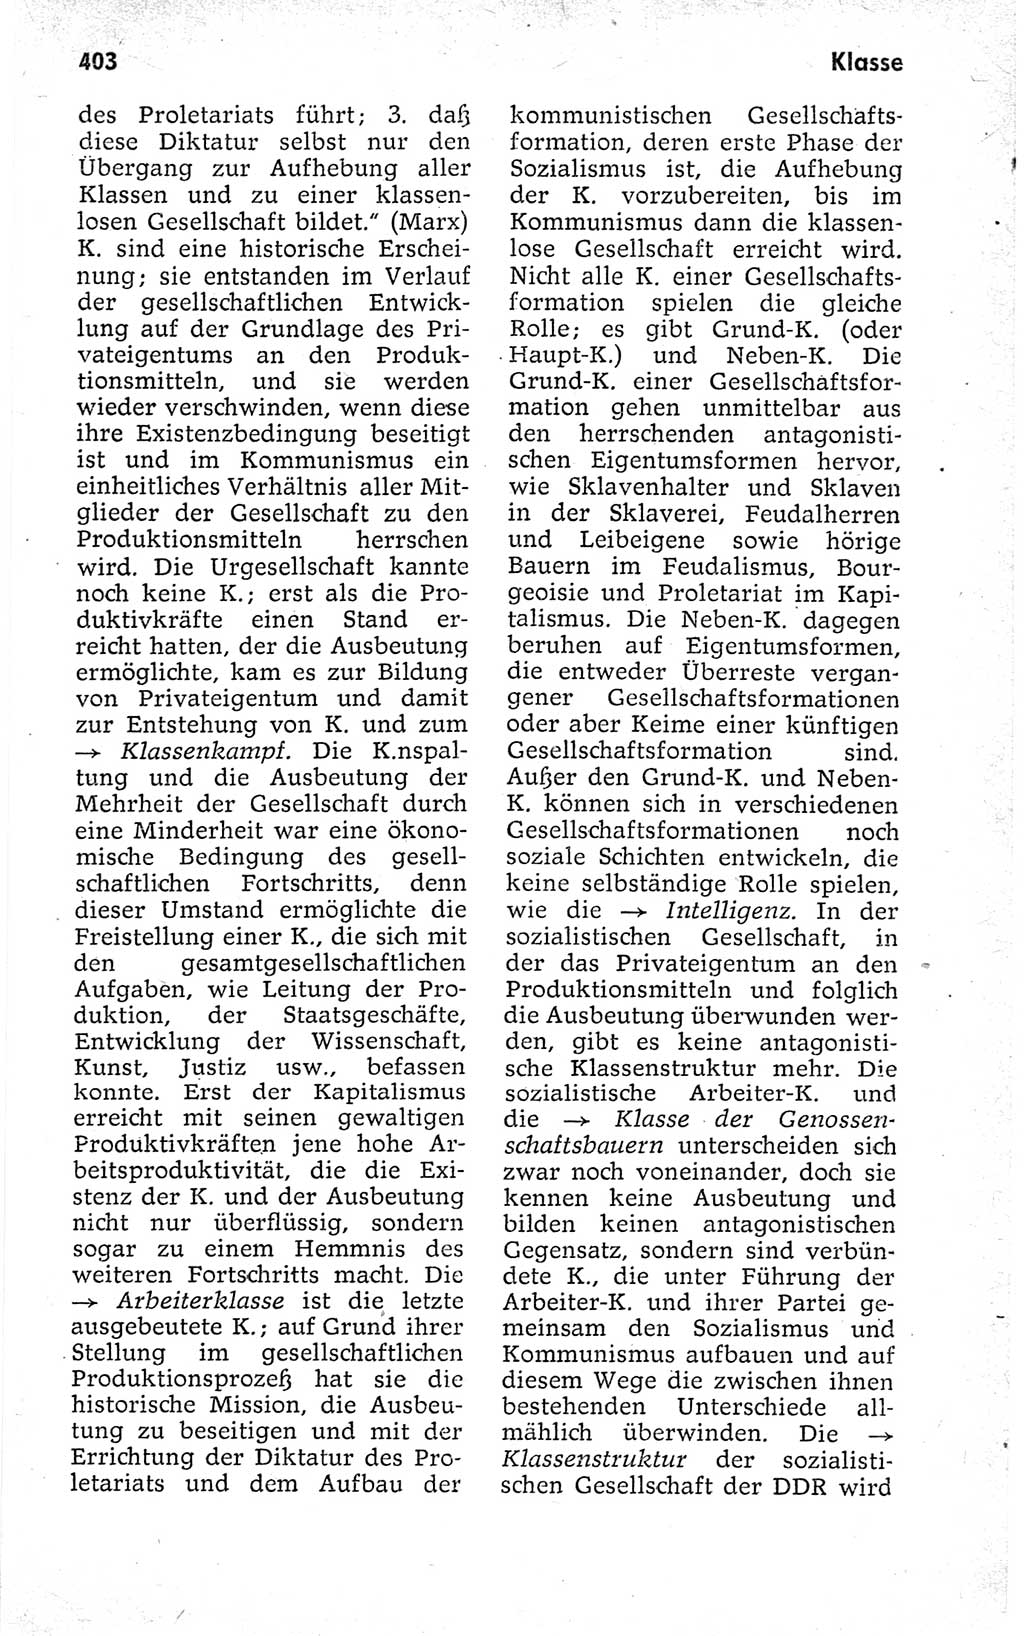 Kleines politisches Wörterbuch [Deutsche Demokratische Republik (DDR)] 1973, Seite 403 (Kl. pol. Wb. DDR 1973, S. 403)